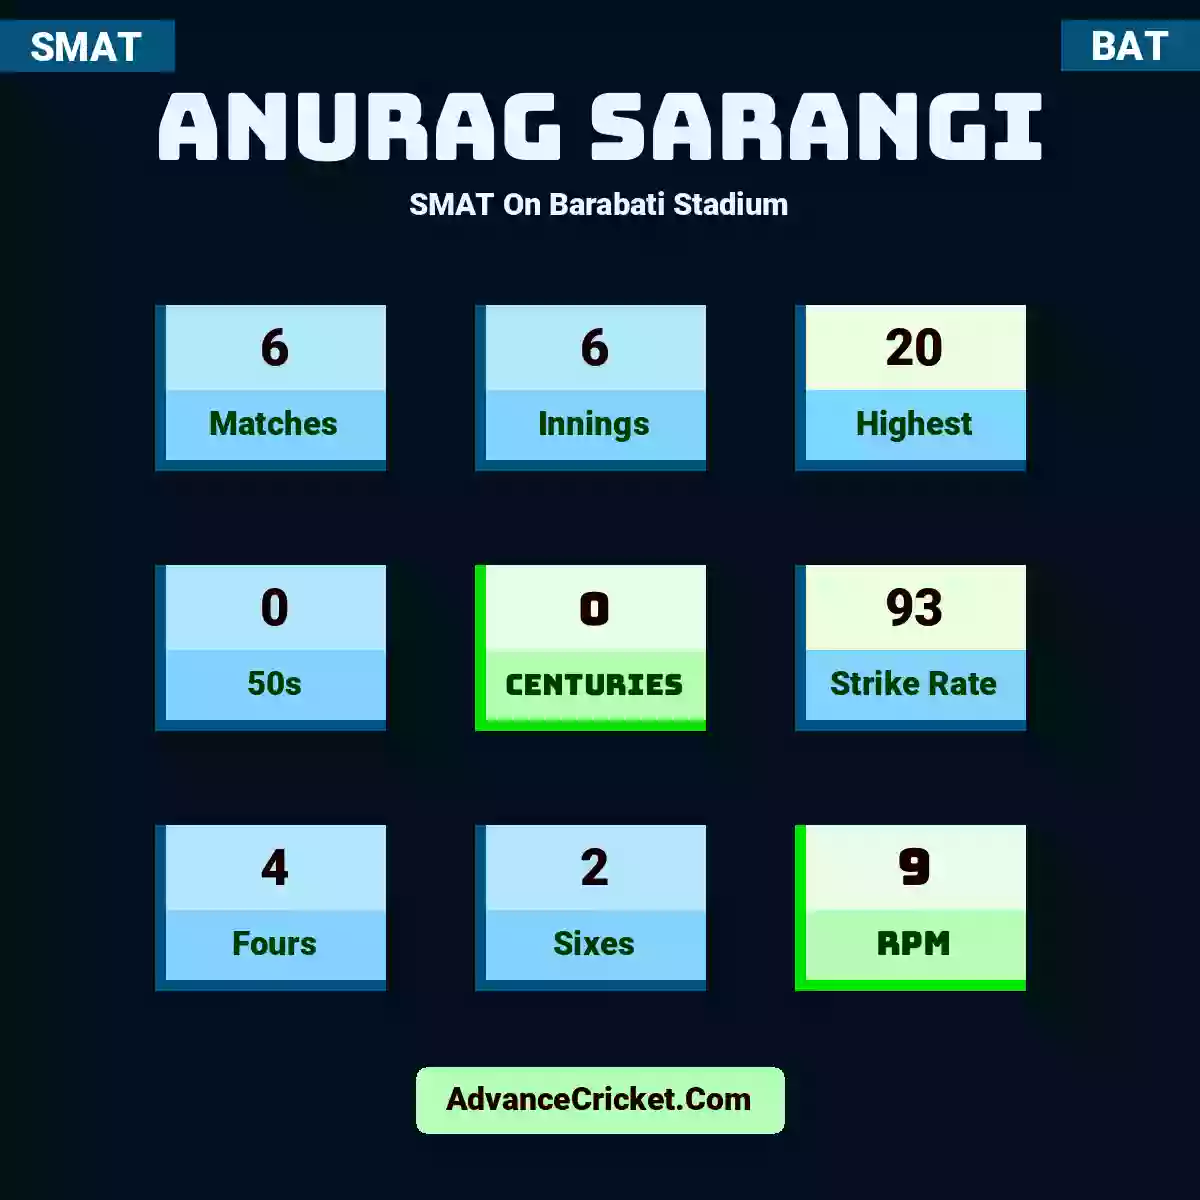 Anurag Sarangi SMAT  On Barabati Stadium, Anurag Sarangi played 6 matches, scored 20 runs as highest, 0 half-centuries, and 0 centuries, with a strike rate of 93. A.Sarangi hit 4 fours and 2 sixes, with an RPM of 9.